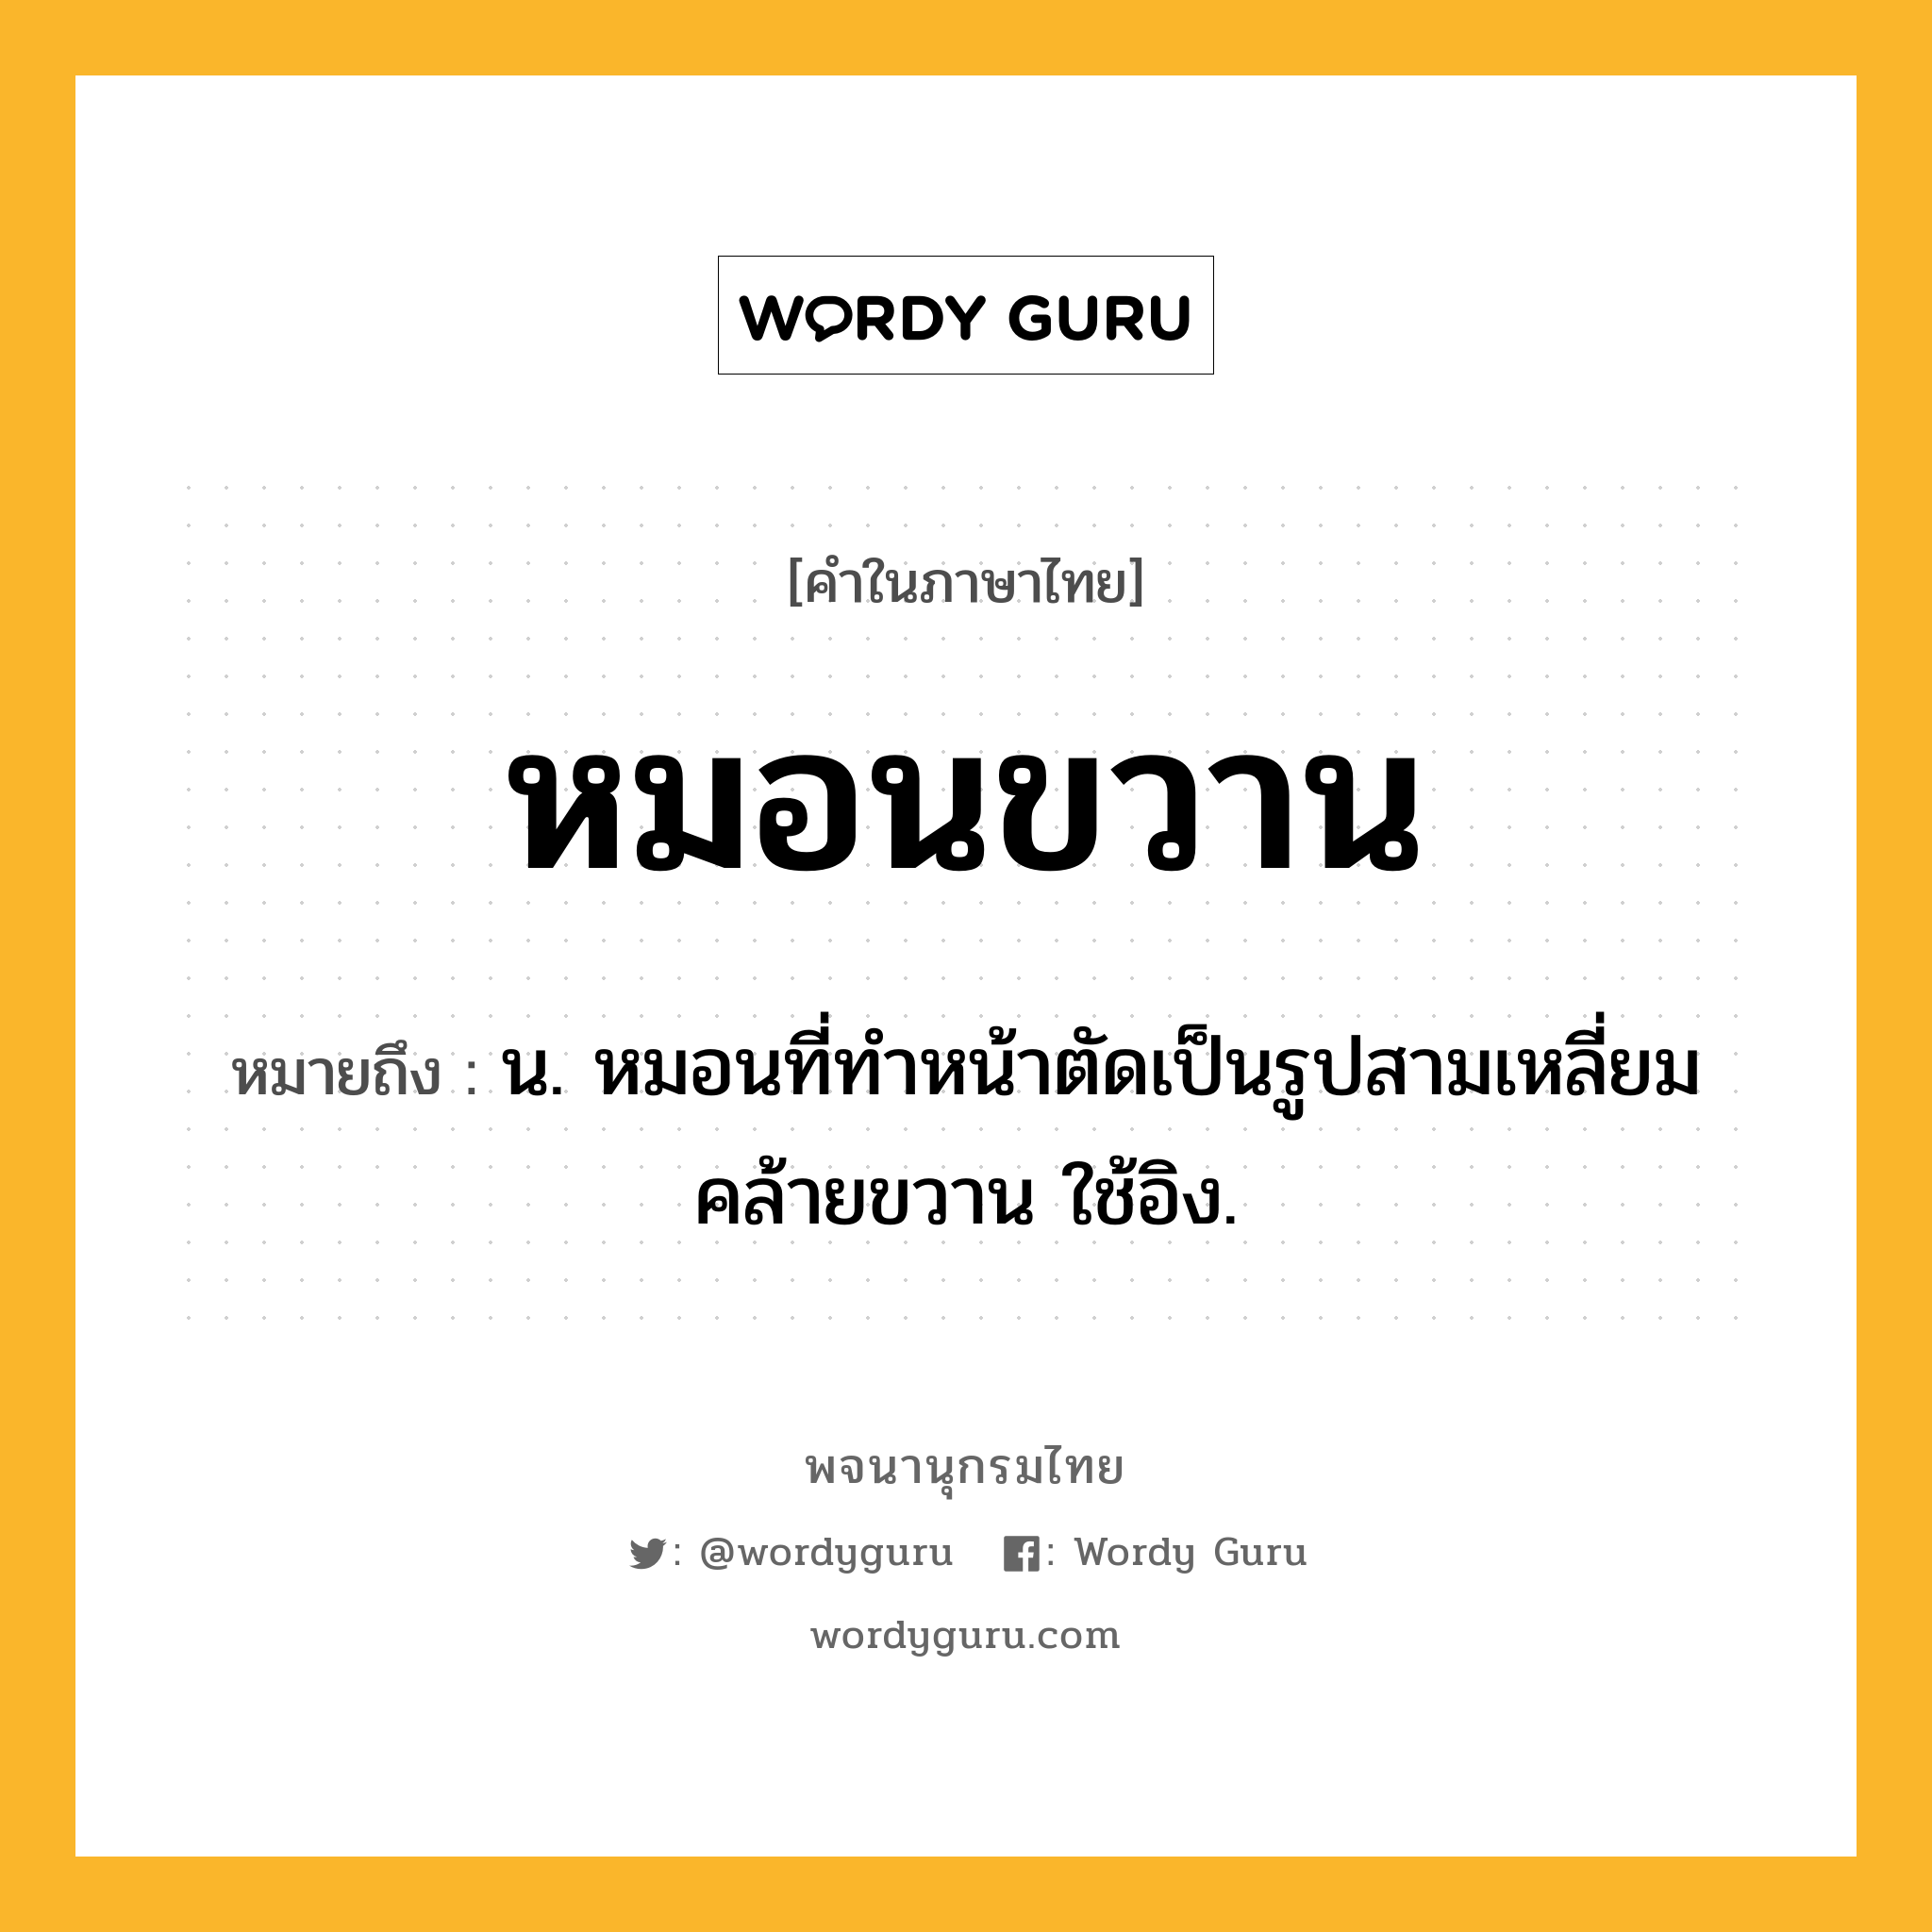 หมอนขวาน ความหมาย หมายถึงอะไร?, คำในภาษาไทย หมอนขวาน หมายถึง น. หมอนที่ทําหน้าตัดเป็นรูปสามเหลี่ยมคล้ายขวาน ใช้อิง.